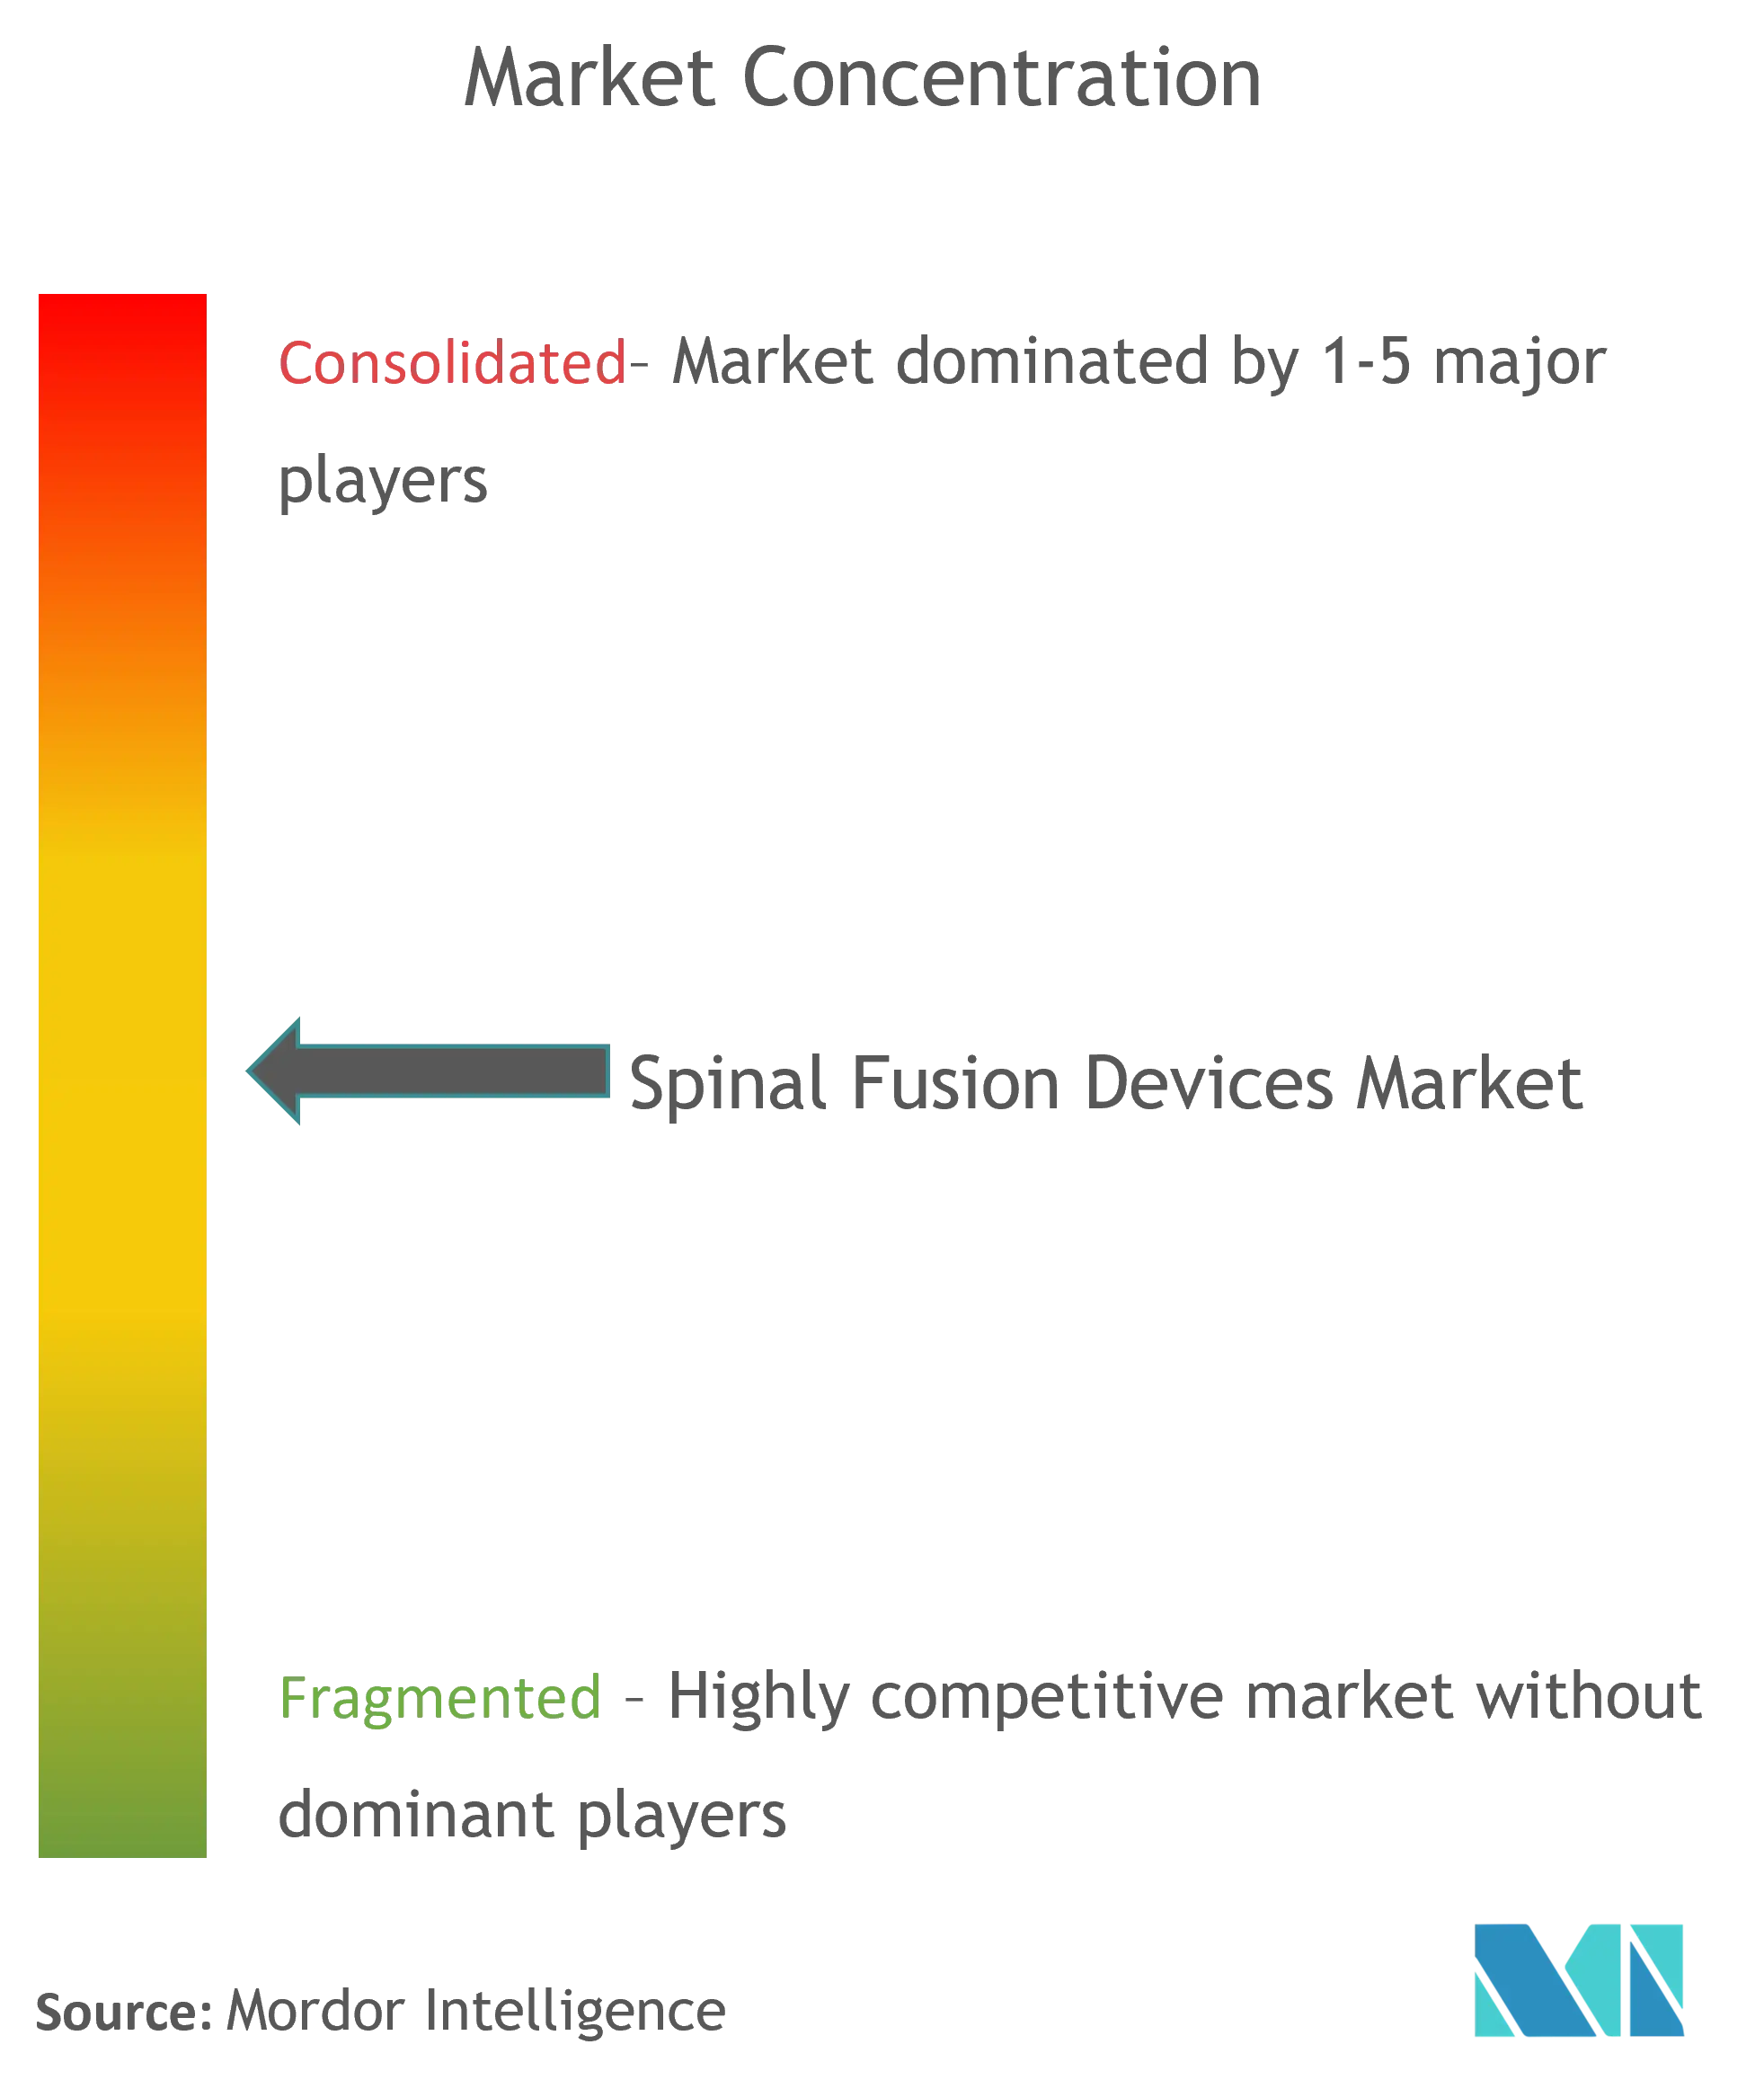 Dispositivos globales de fusión espinalConcentración del Mercado